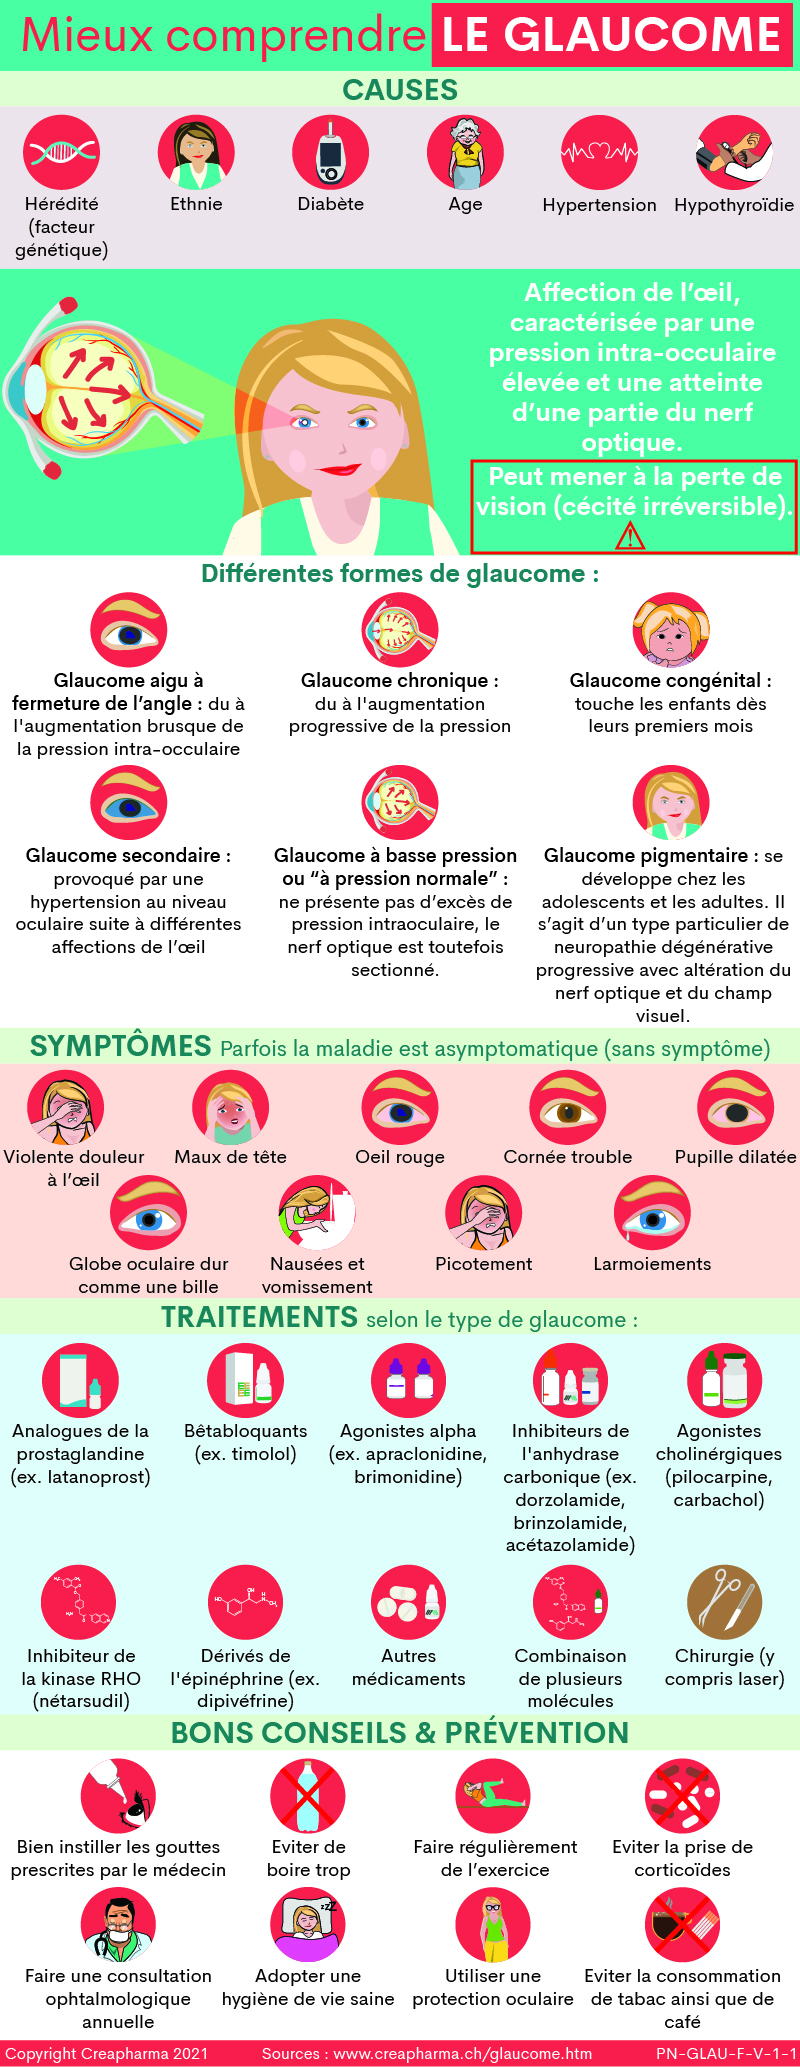 Glaucome : causes, symptômes & traitements | Creapharma